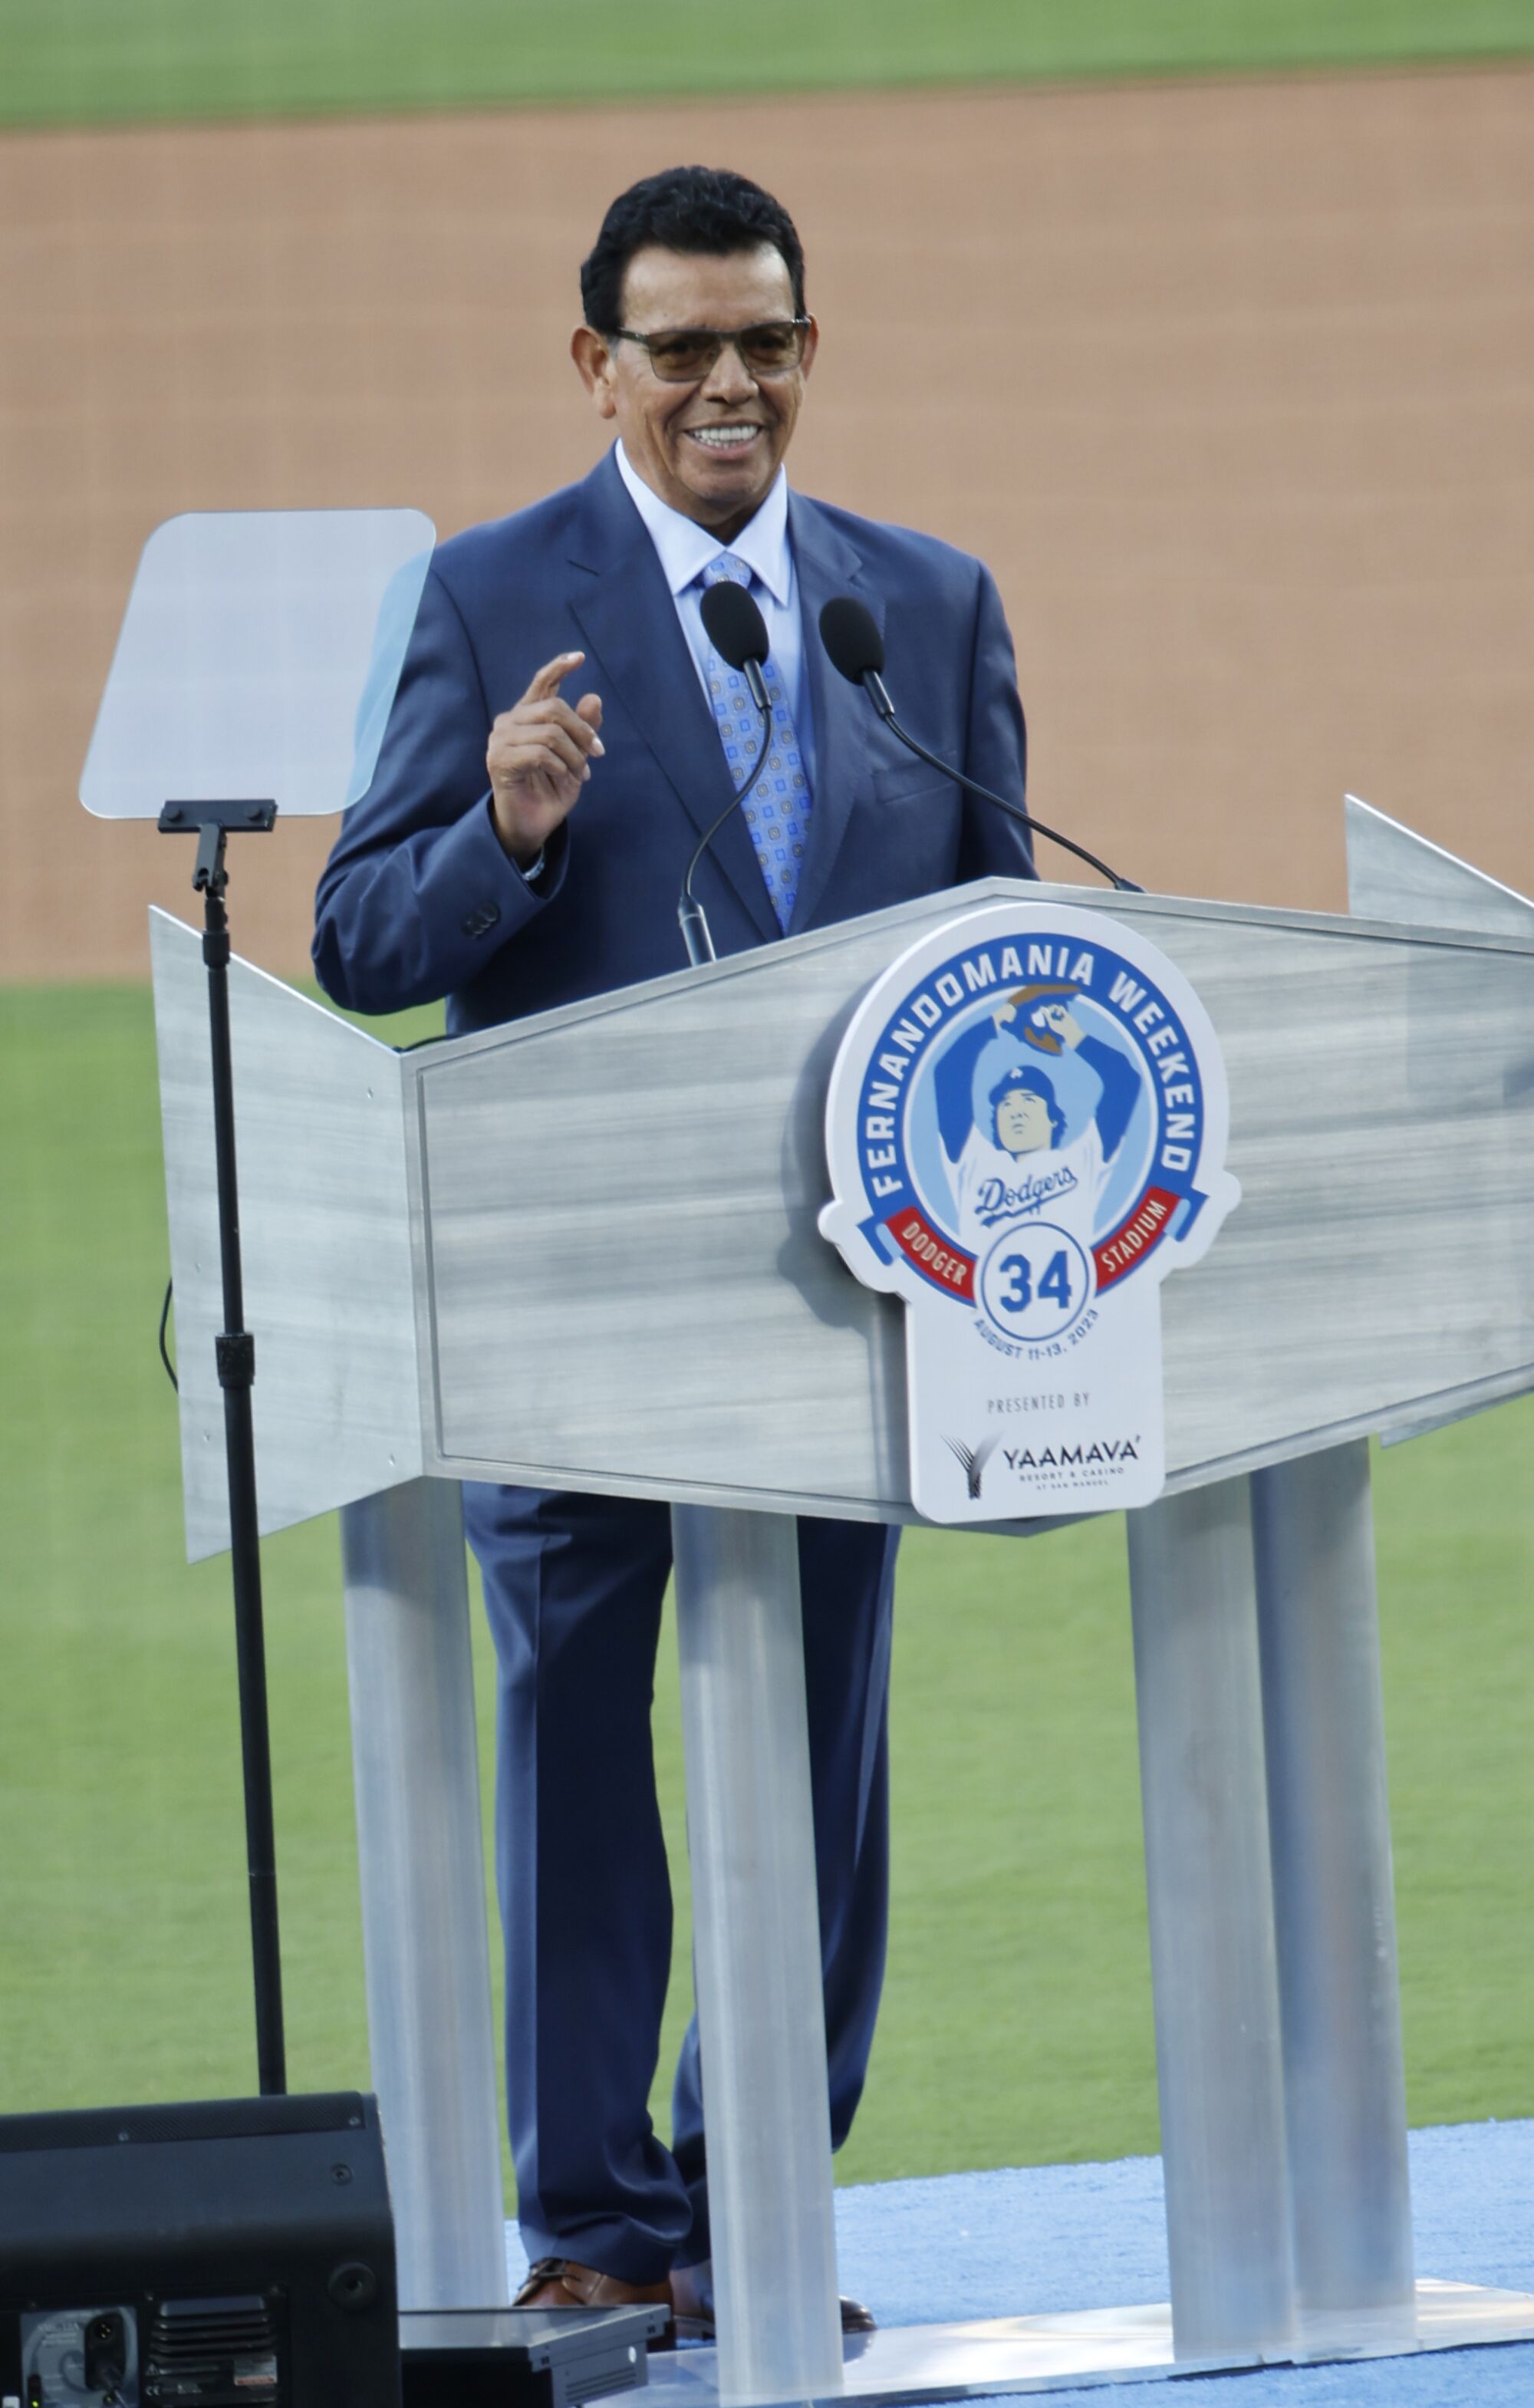 La légende des Dodgers Fernando Valenzuela s'adresse à la foule lors de sa cérémonie de retrait du maillot au Dodger Stadium.